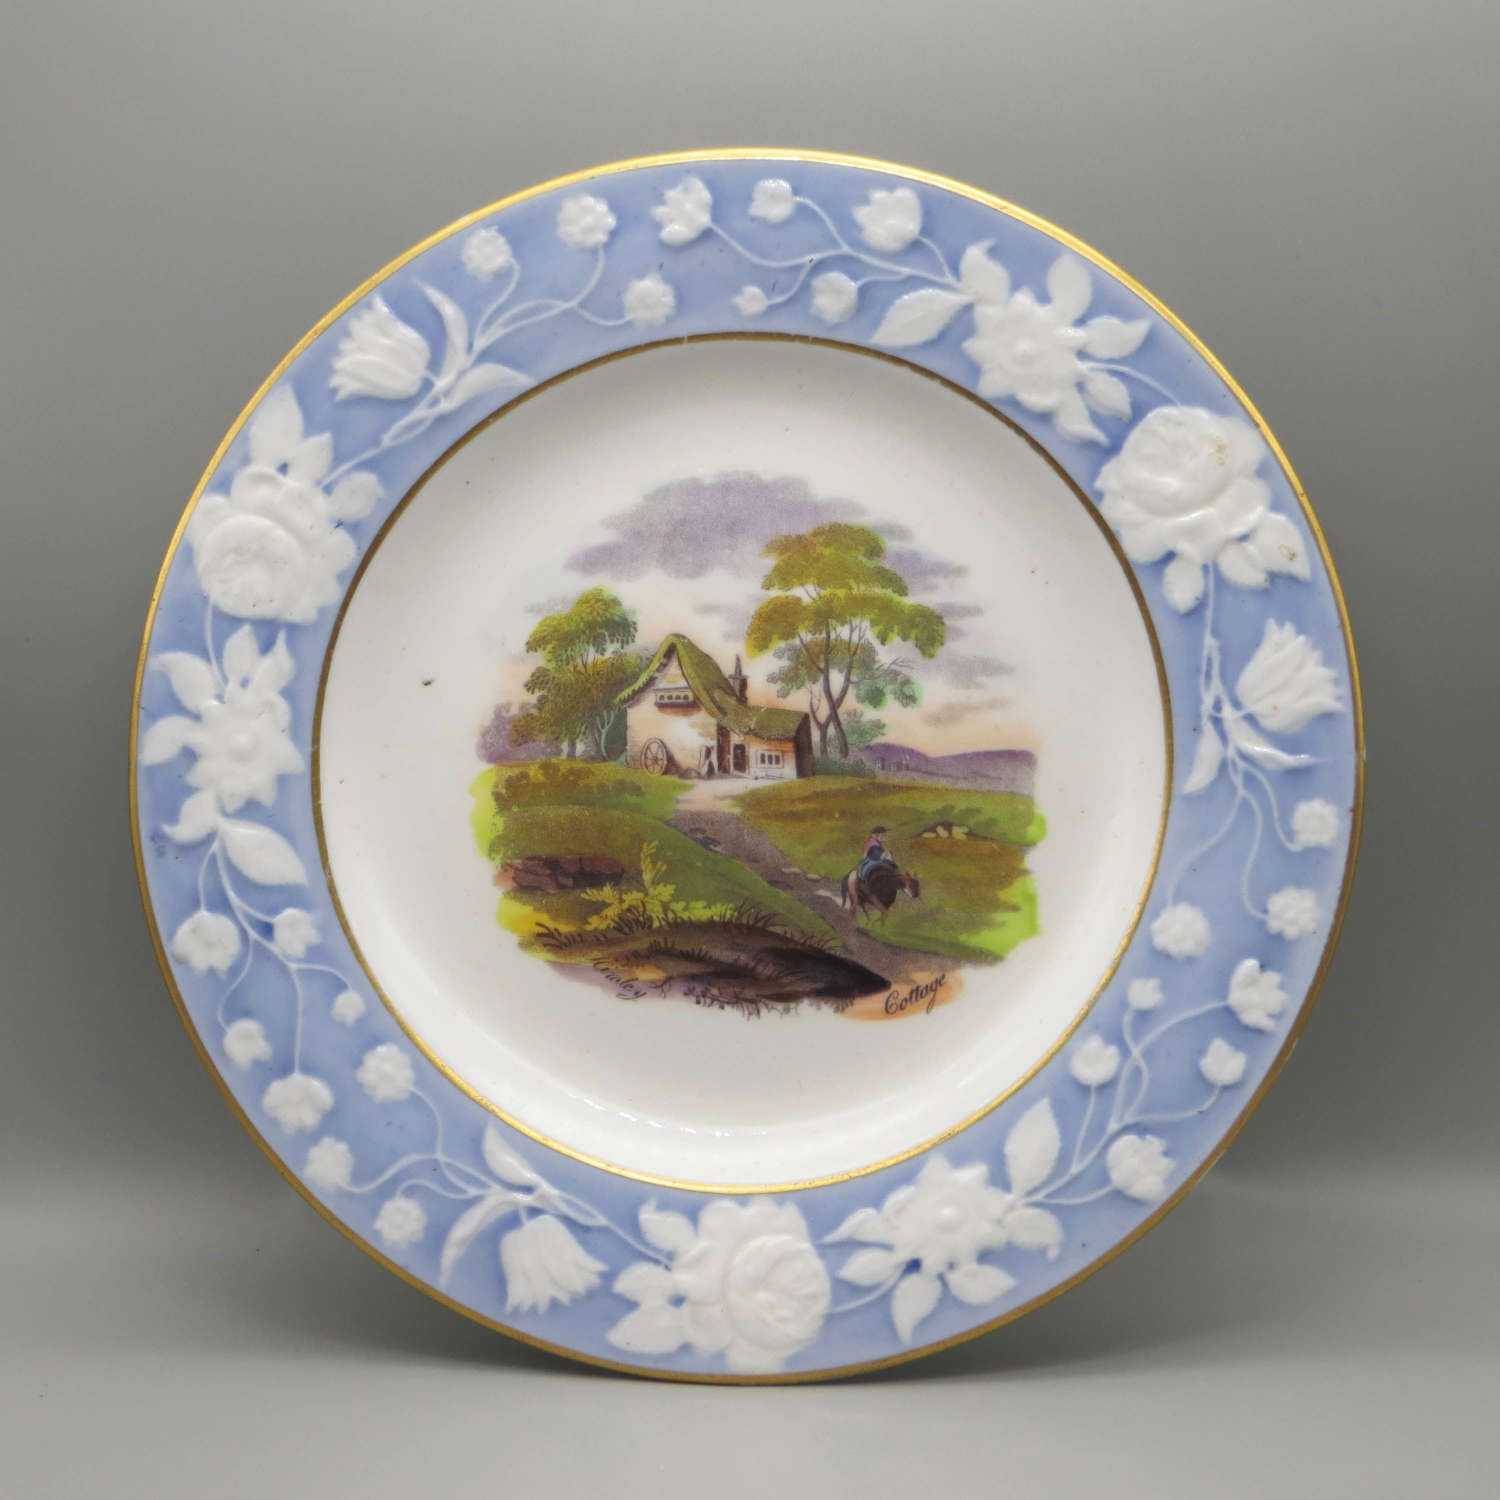 19th century New Hall bone china plate